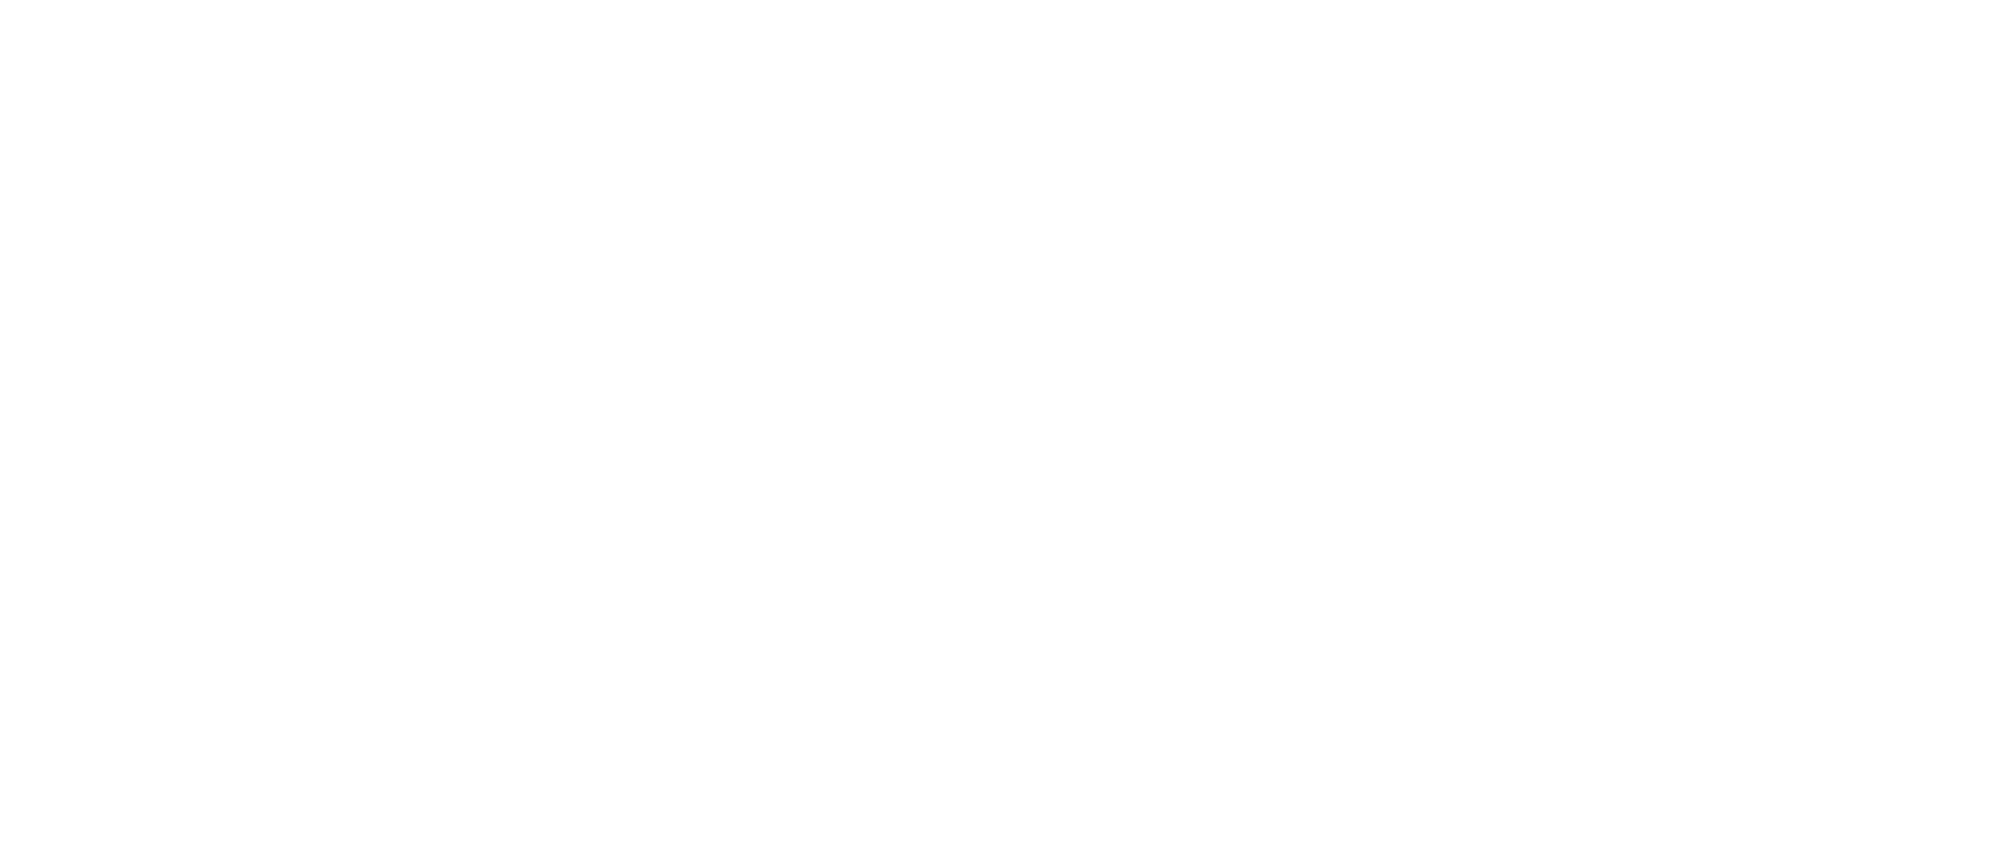 Achieve Practice Automation